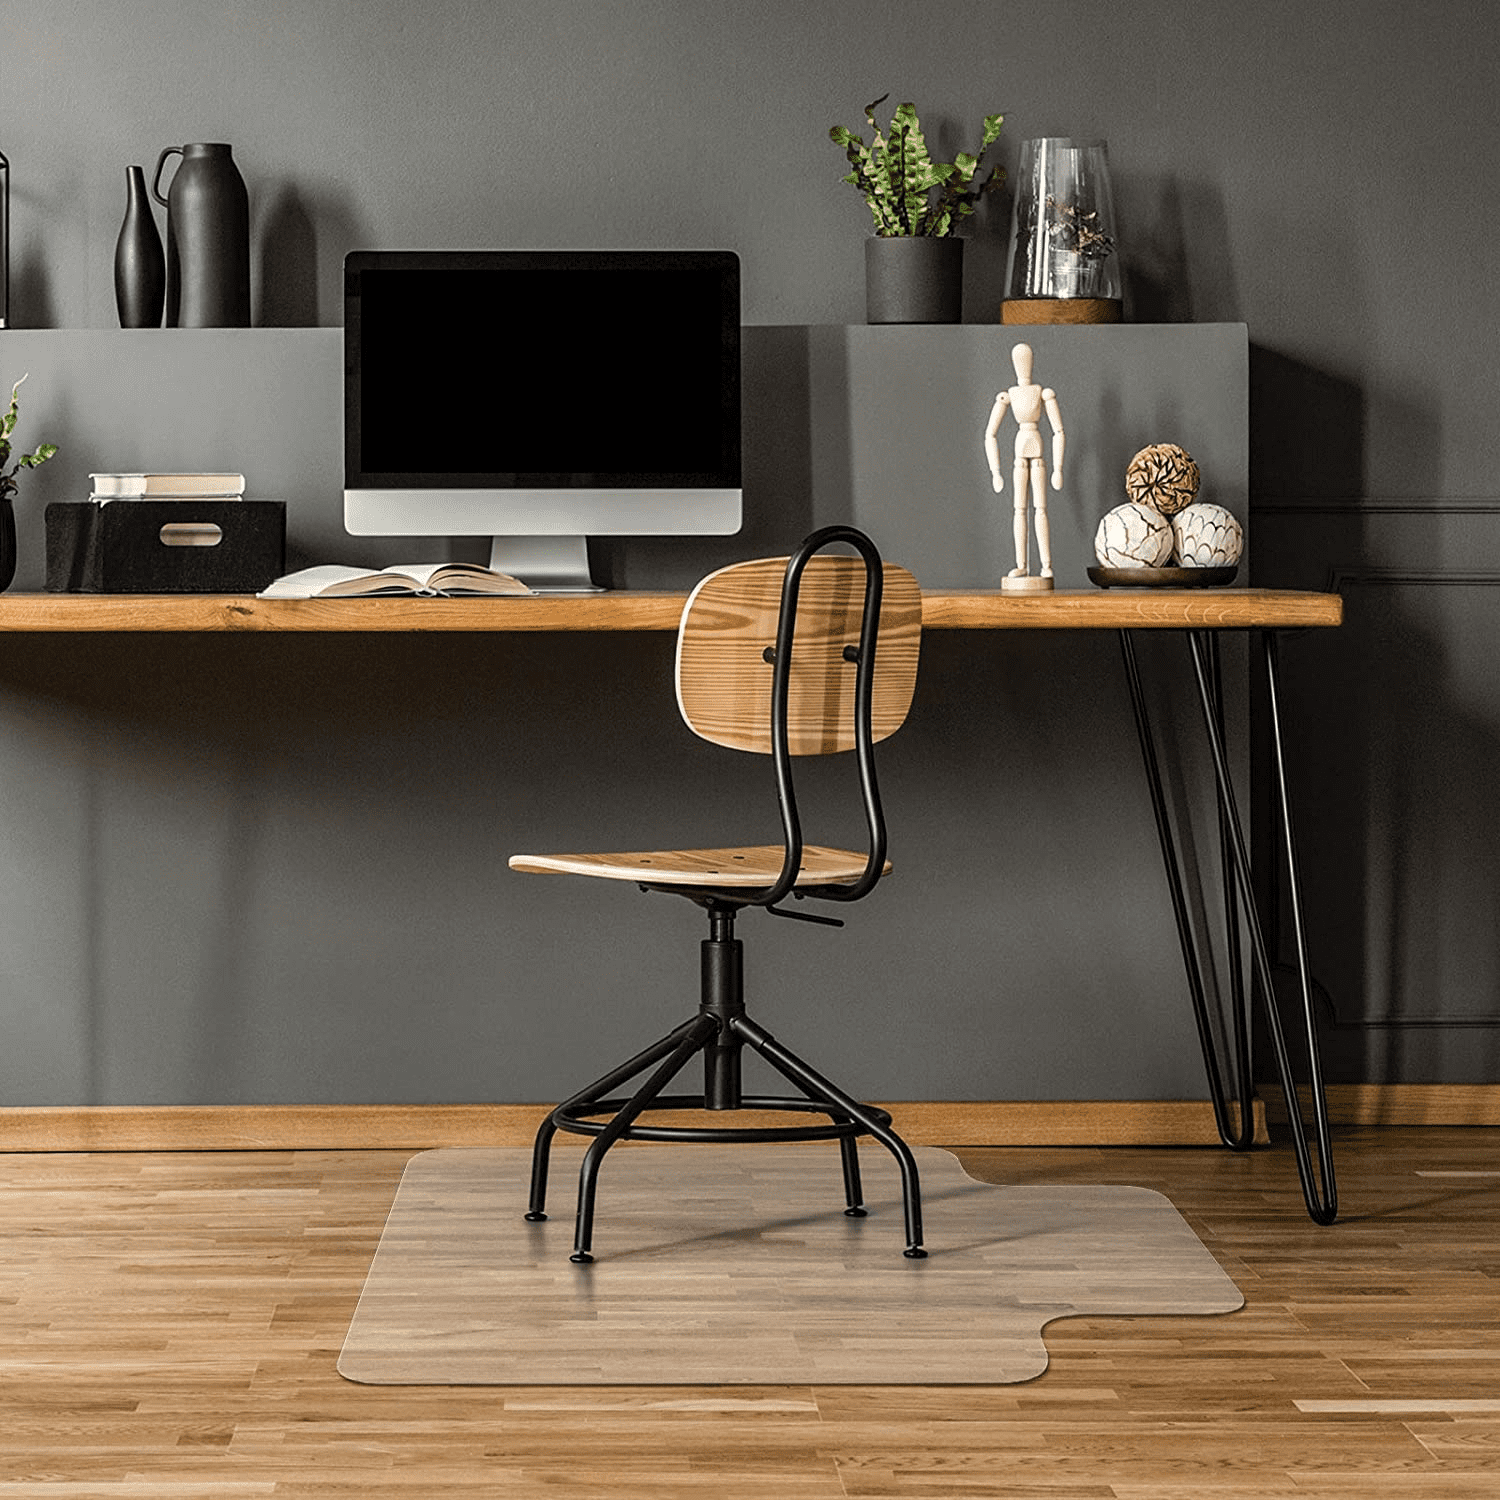 New 36" x 48" Home Computer Desk Mat for Hardwood Floor Office Chair Mat 